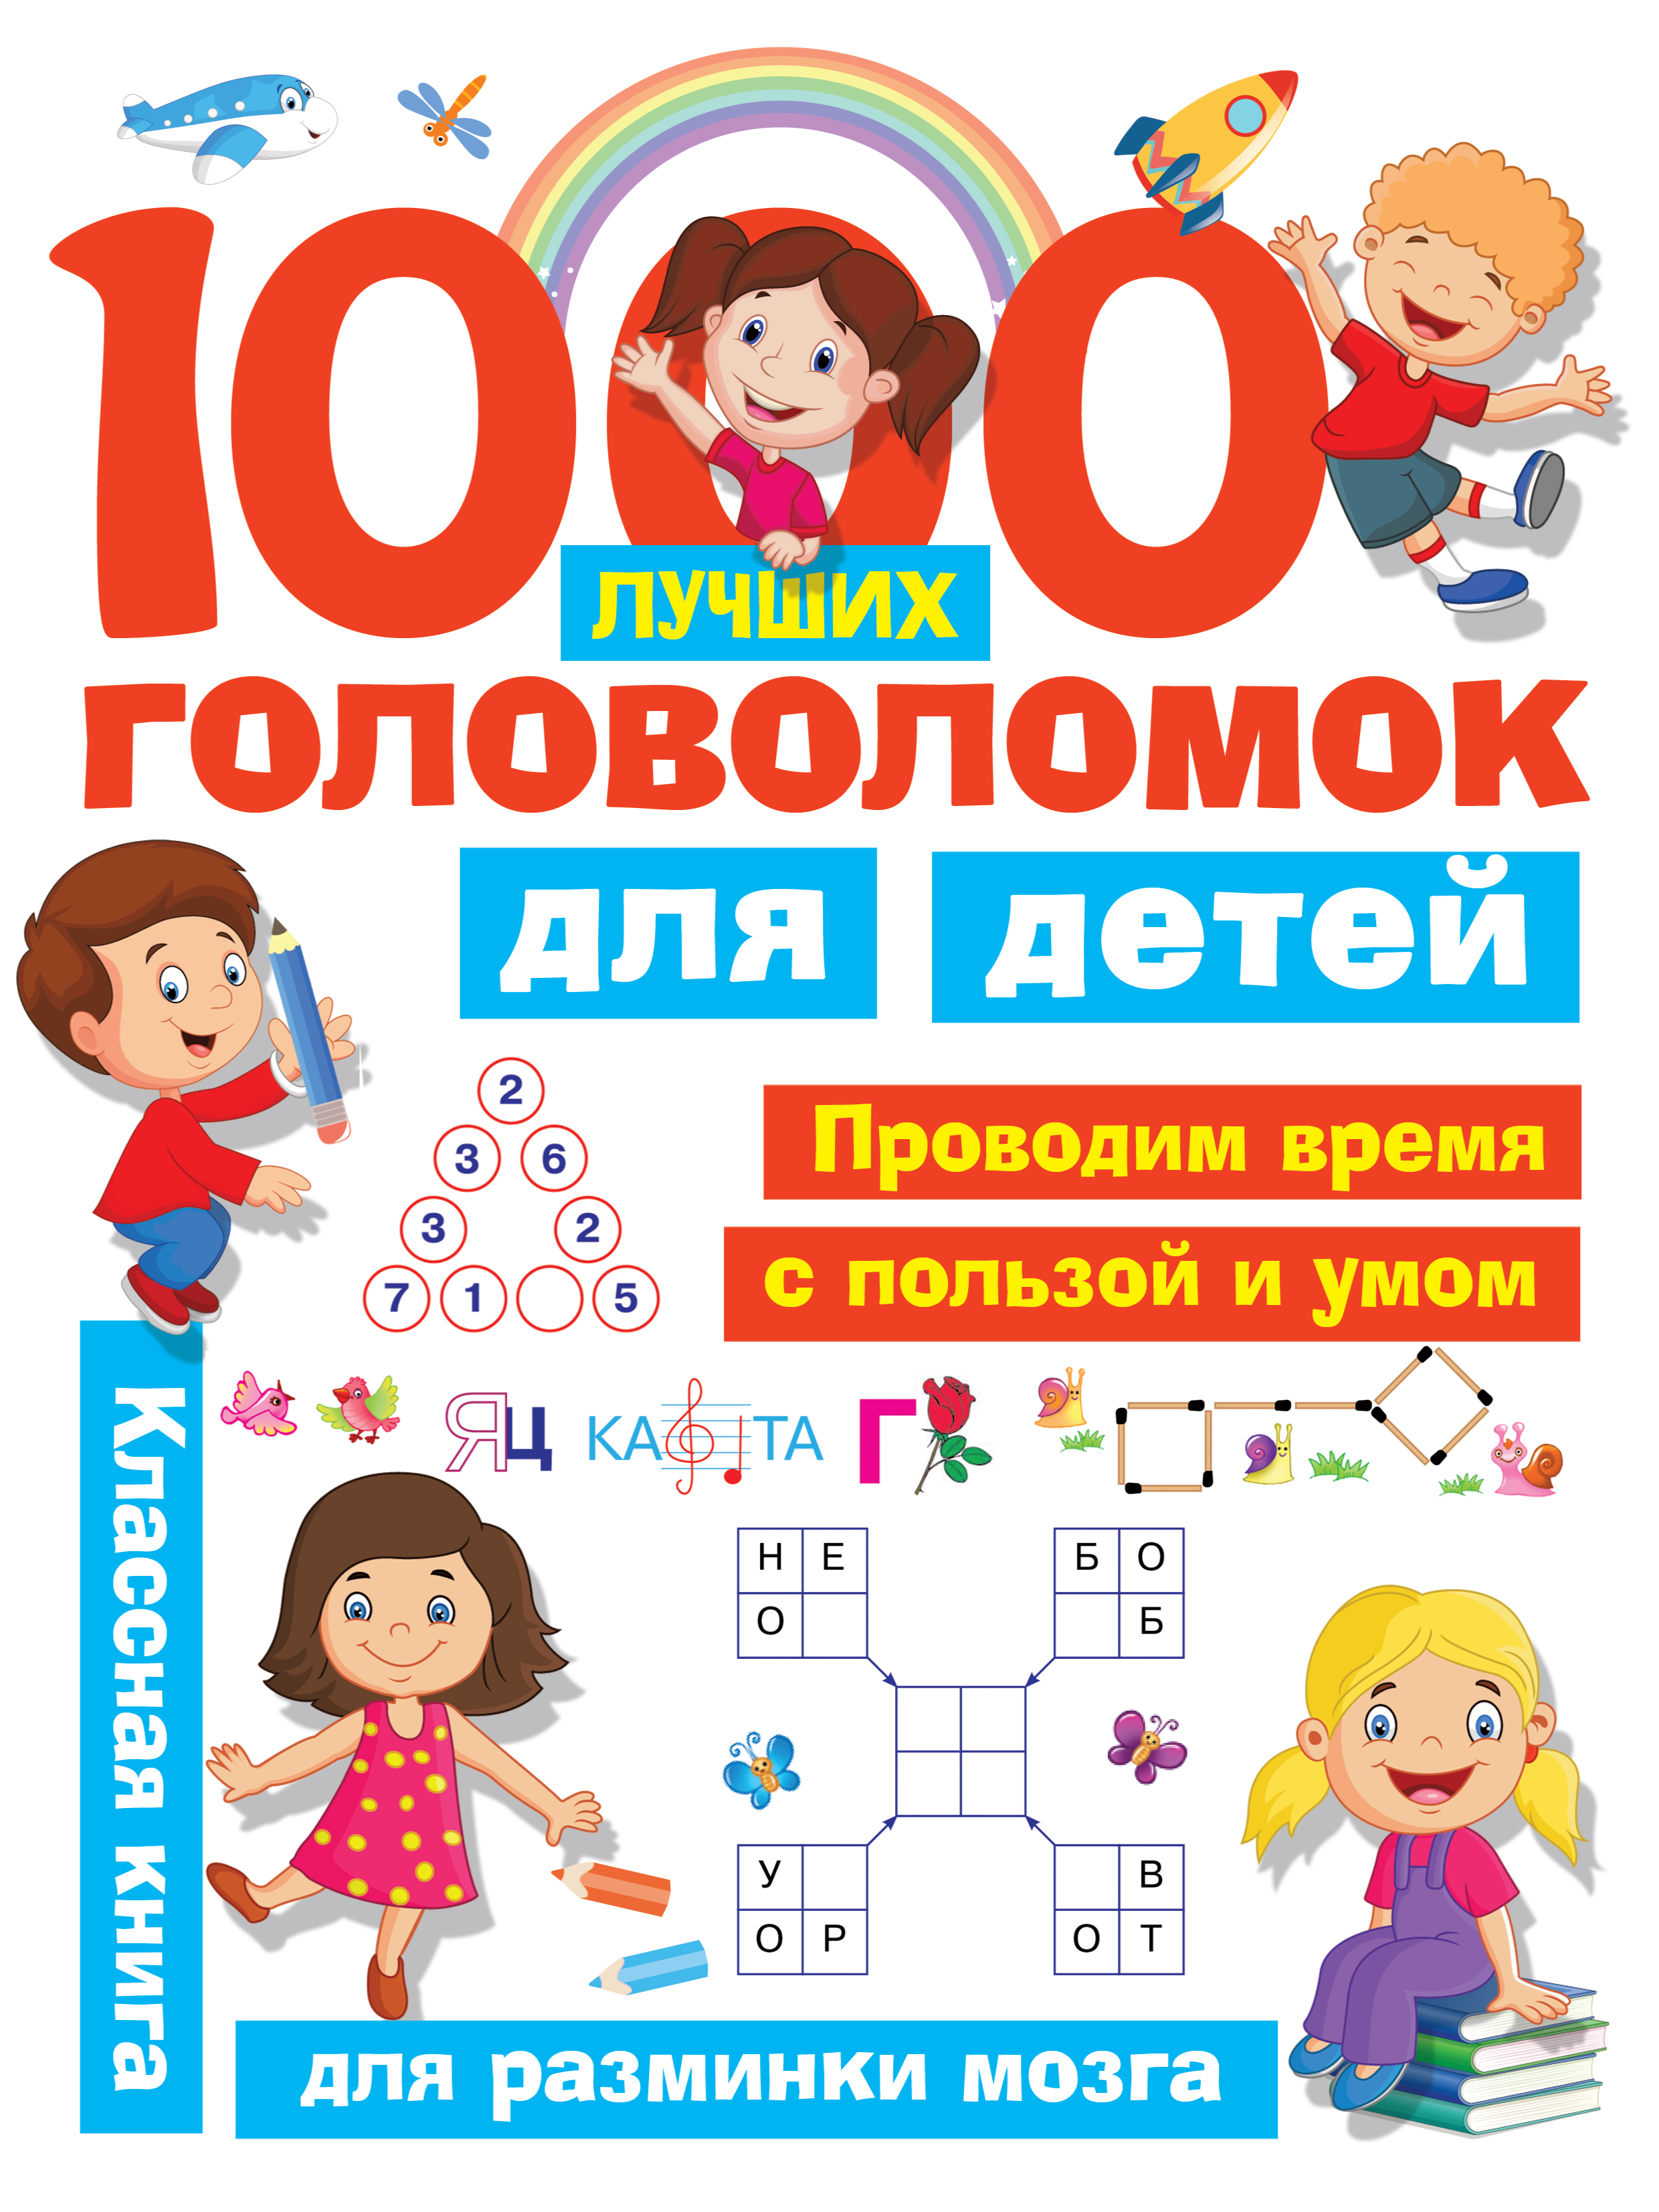 1000 лучших головоломок для детей дмитриева в г горбунова и в Дмитриева Валентина Геннадьевна 1000 лучших головоломок для детей